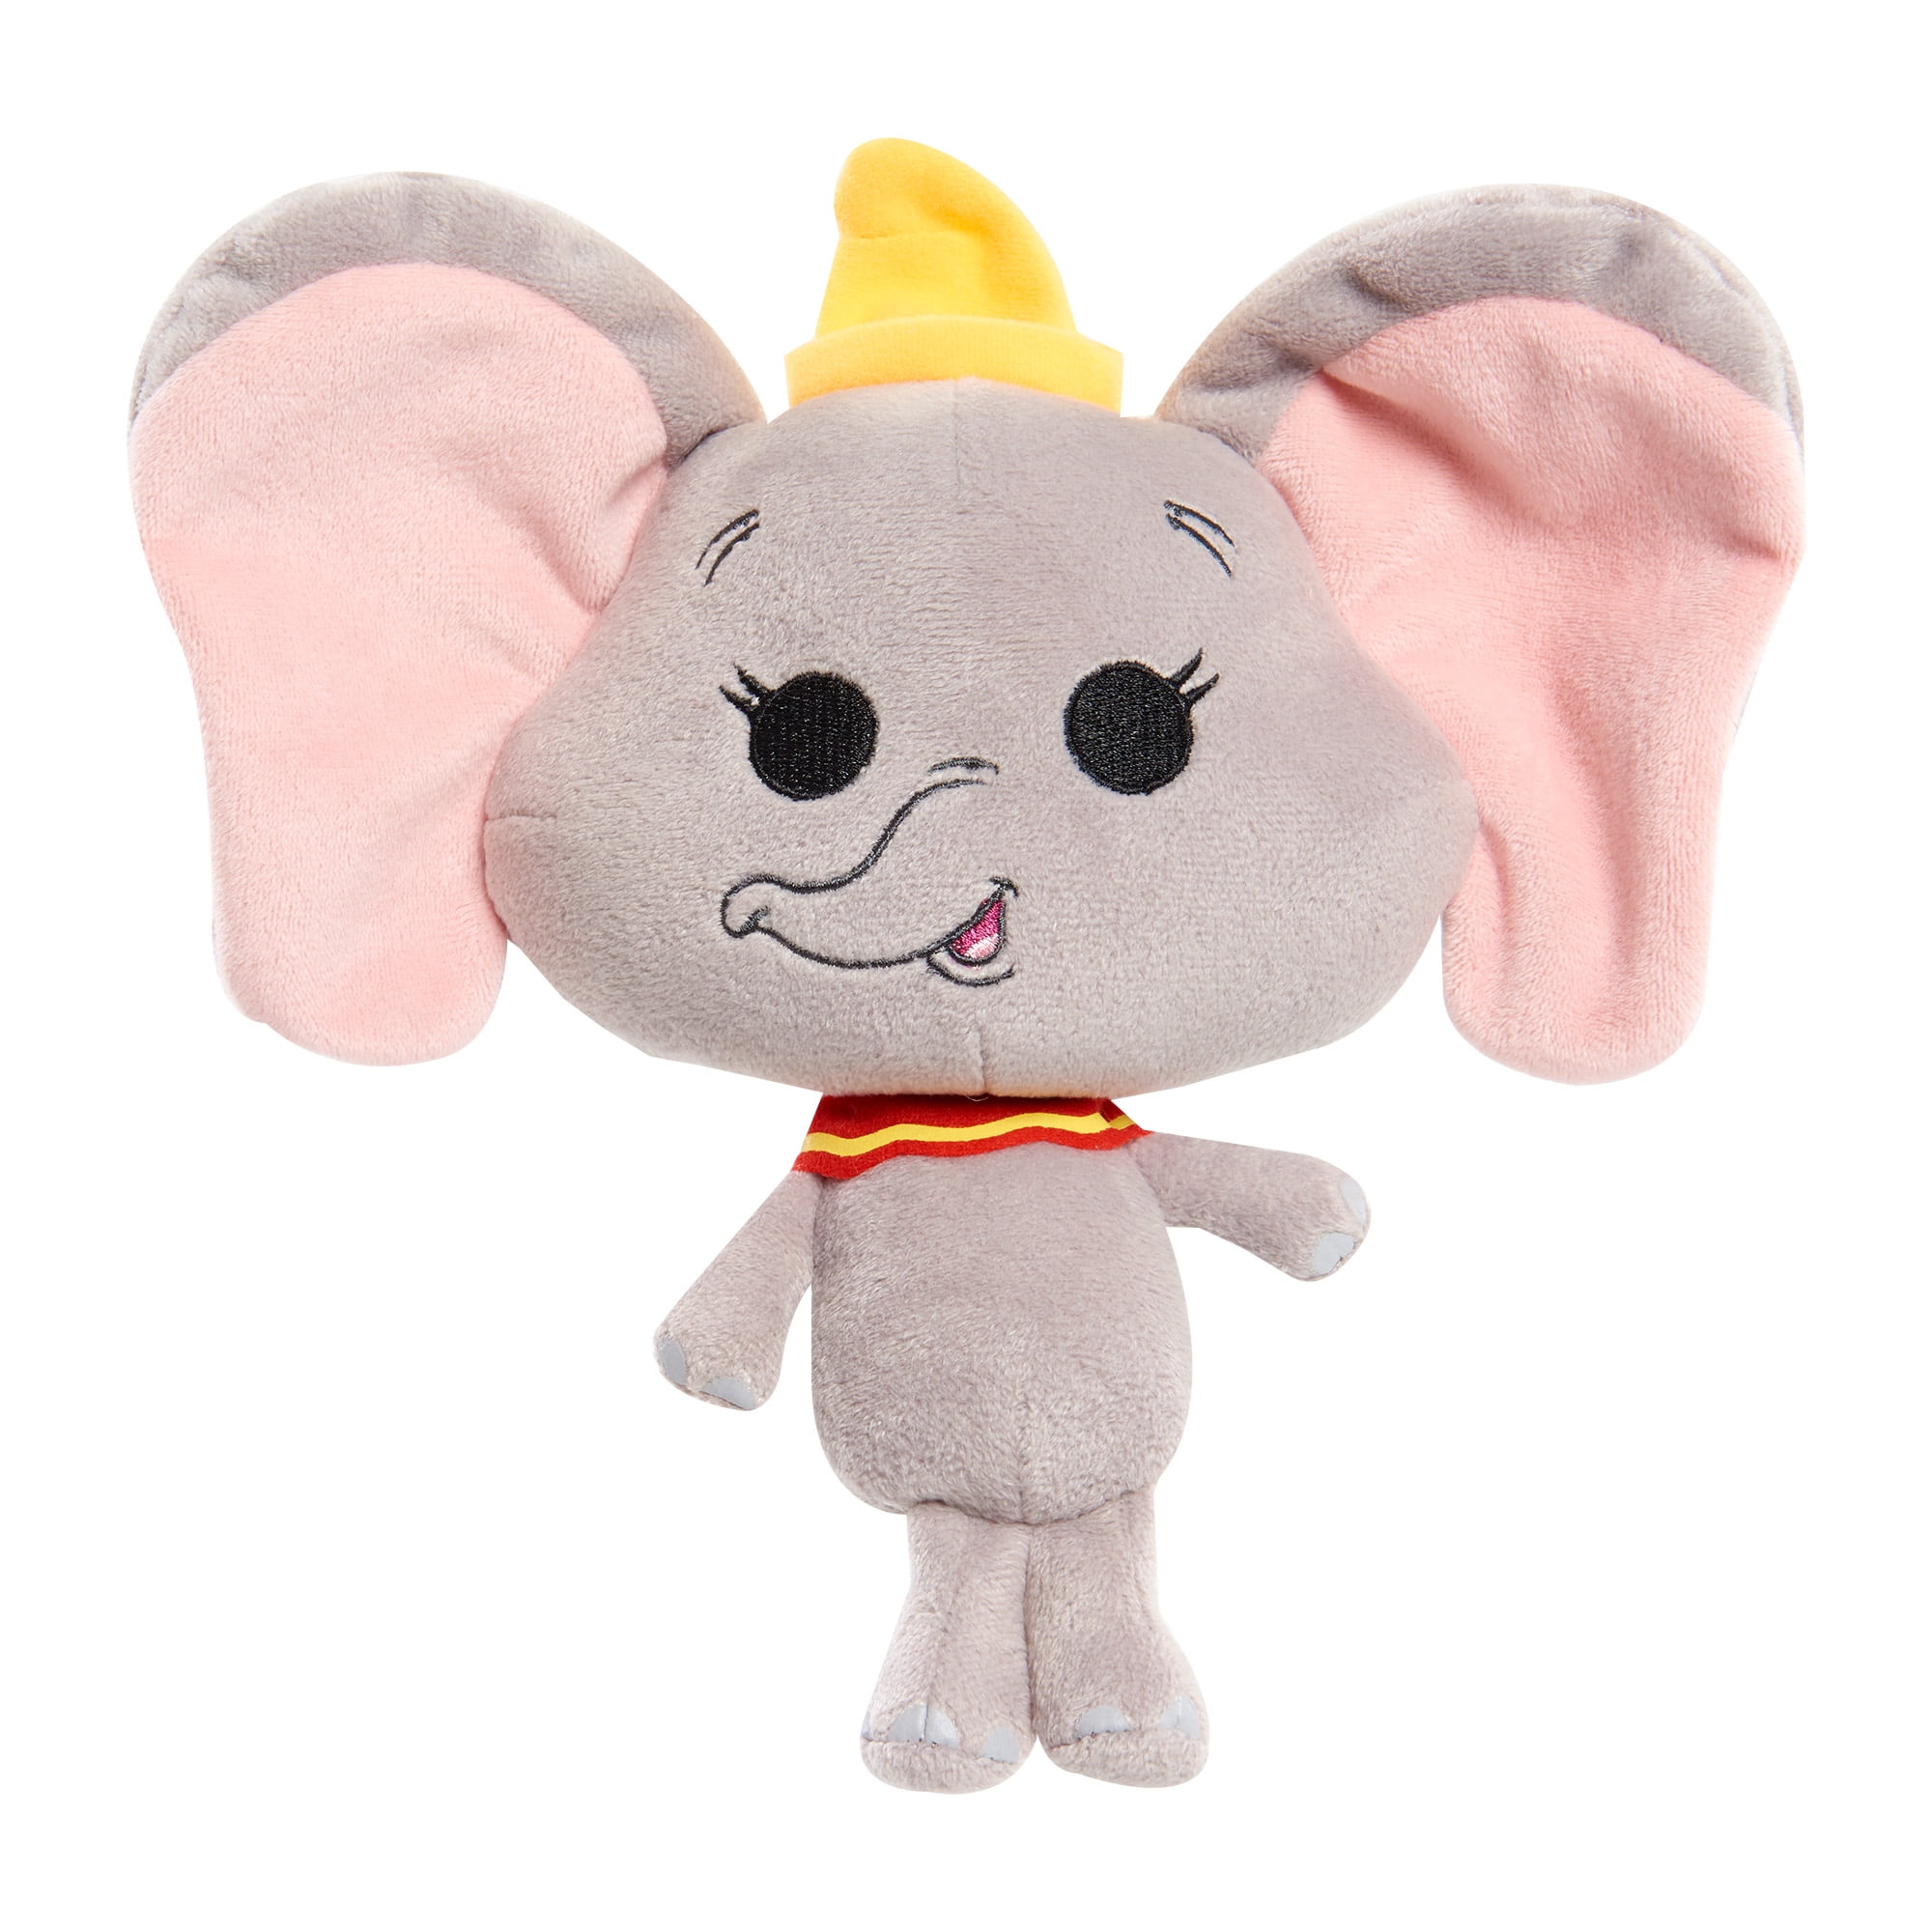 Official Disney Flying Dumbo Soft Plush 